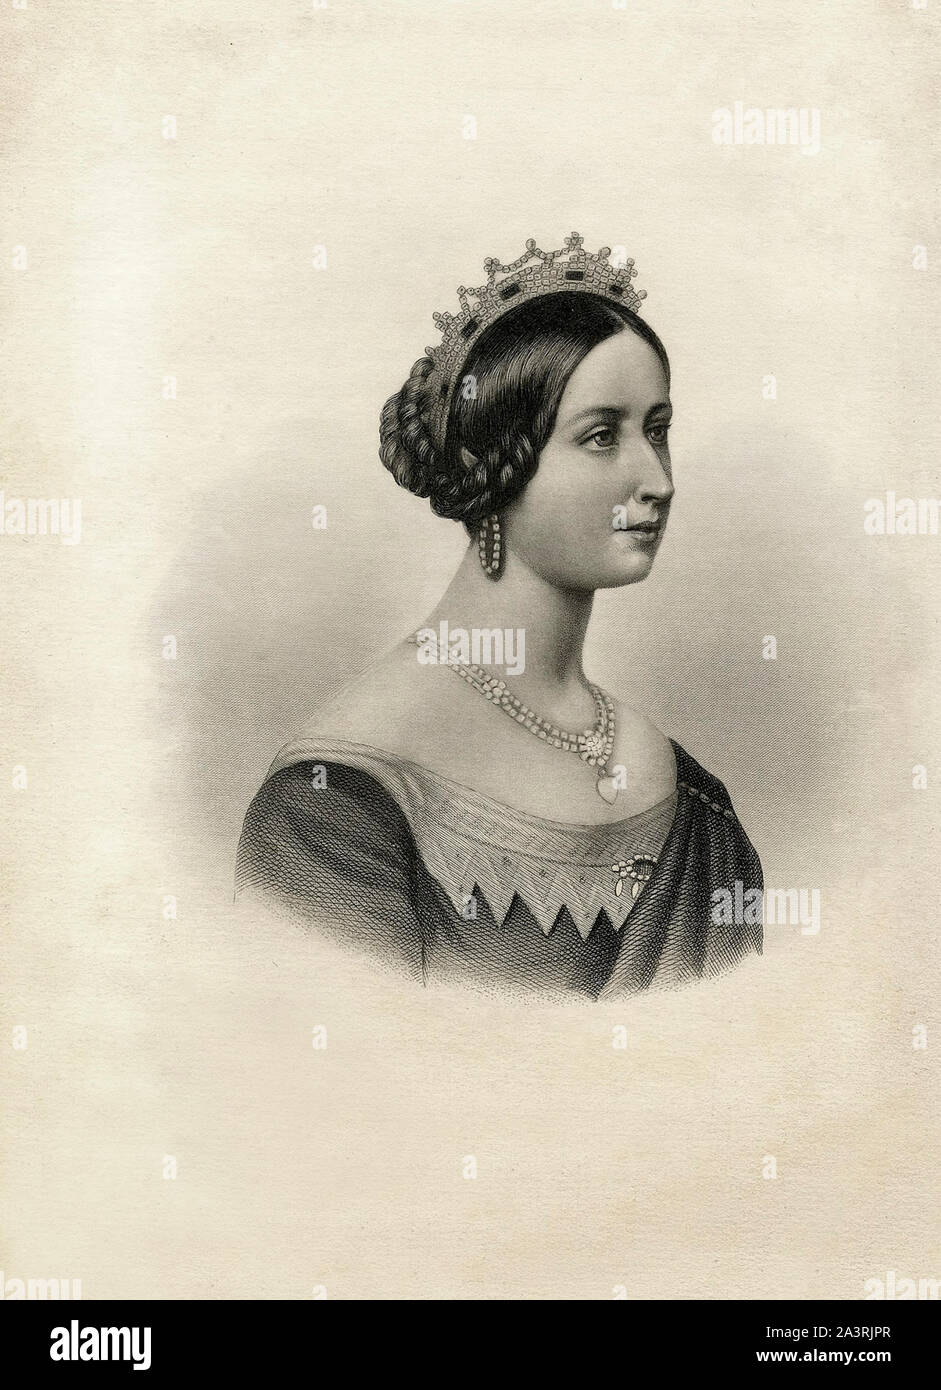 Gravur der jungen Victoria (Alexandrina Victoria; 1819-1901), Königin des Vereinigten Königreichs von Großbritannien und Irland vom 20. Juni 1837 bis zu ihrem Stockfoto